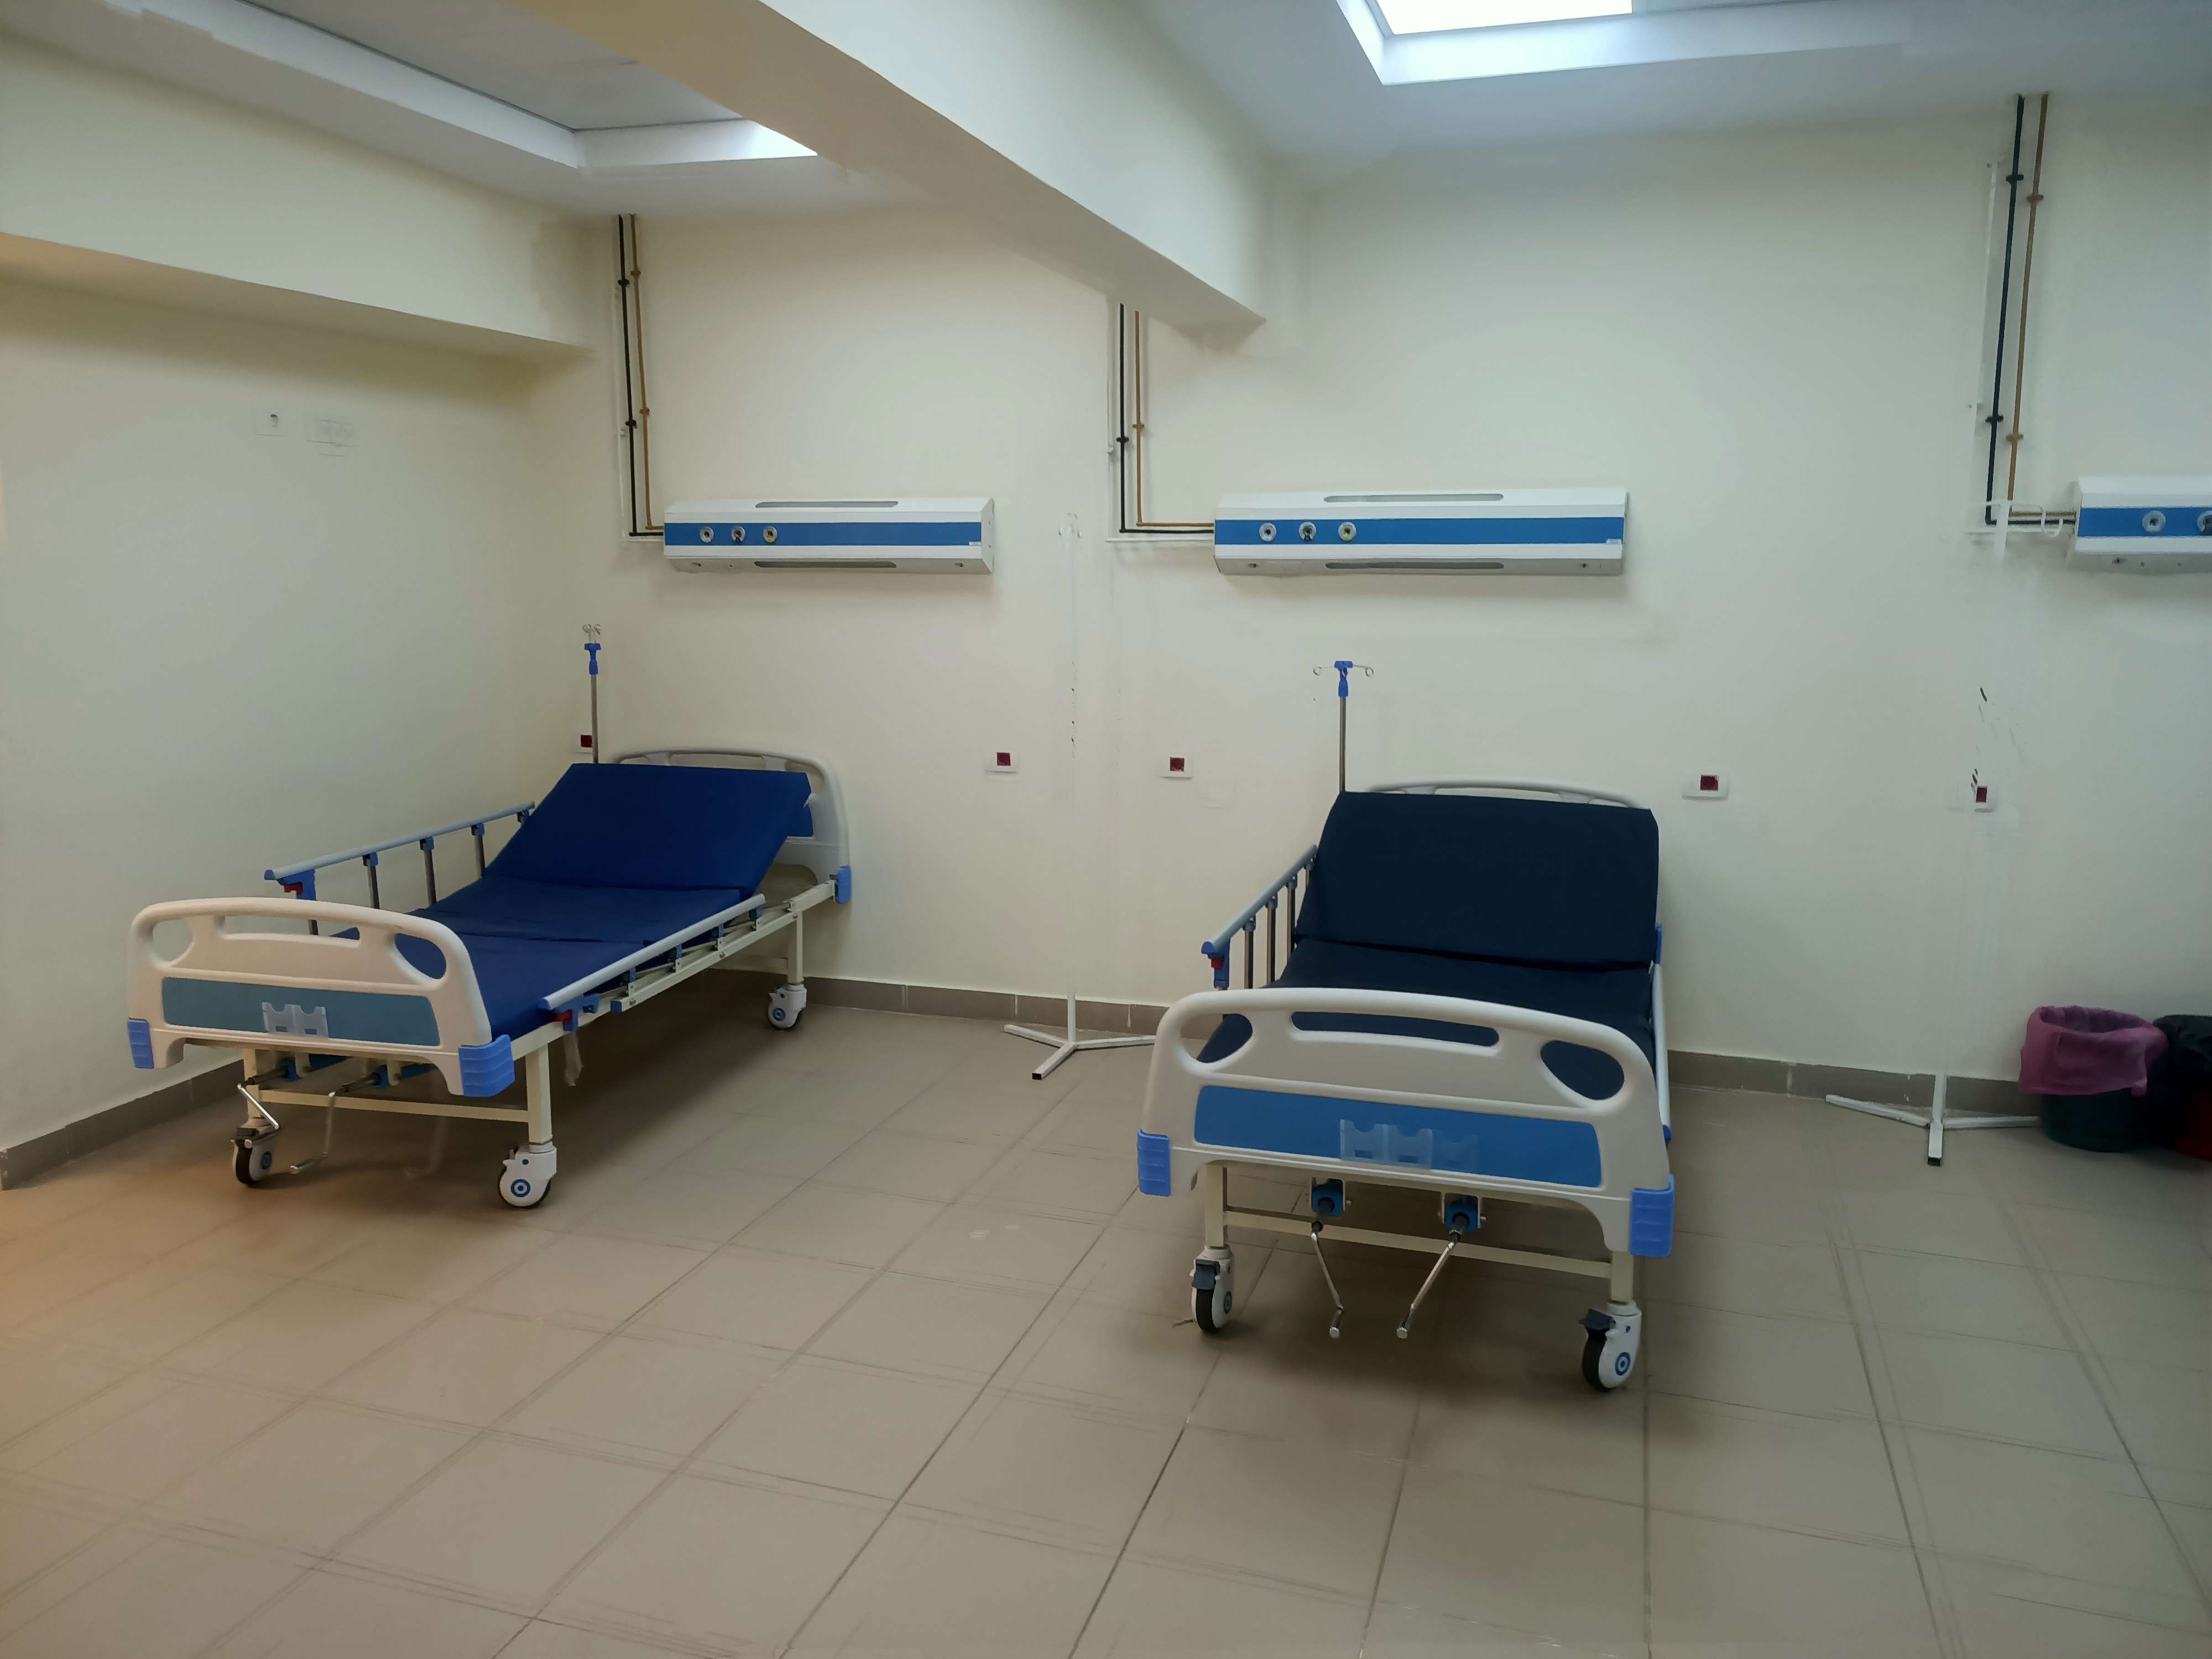  مستشفى حميات منوف تقدم أفضل خدمة صحية للمرضى  (4)